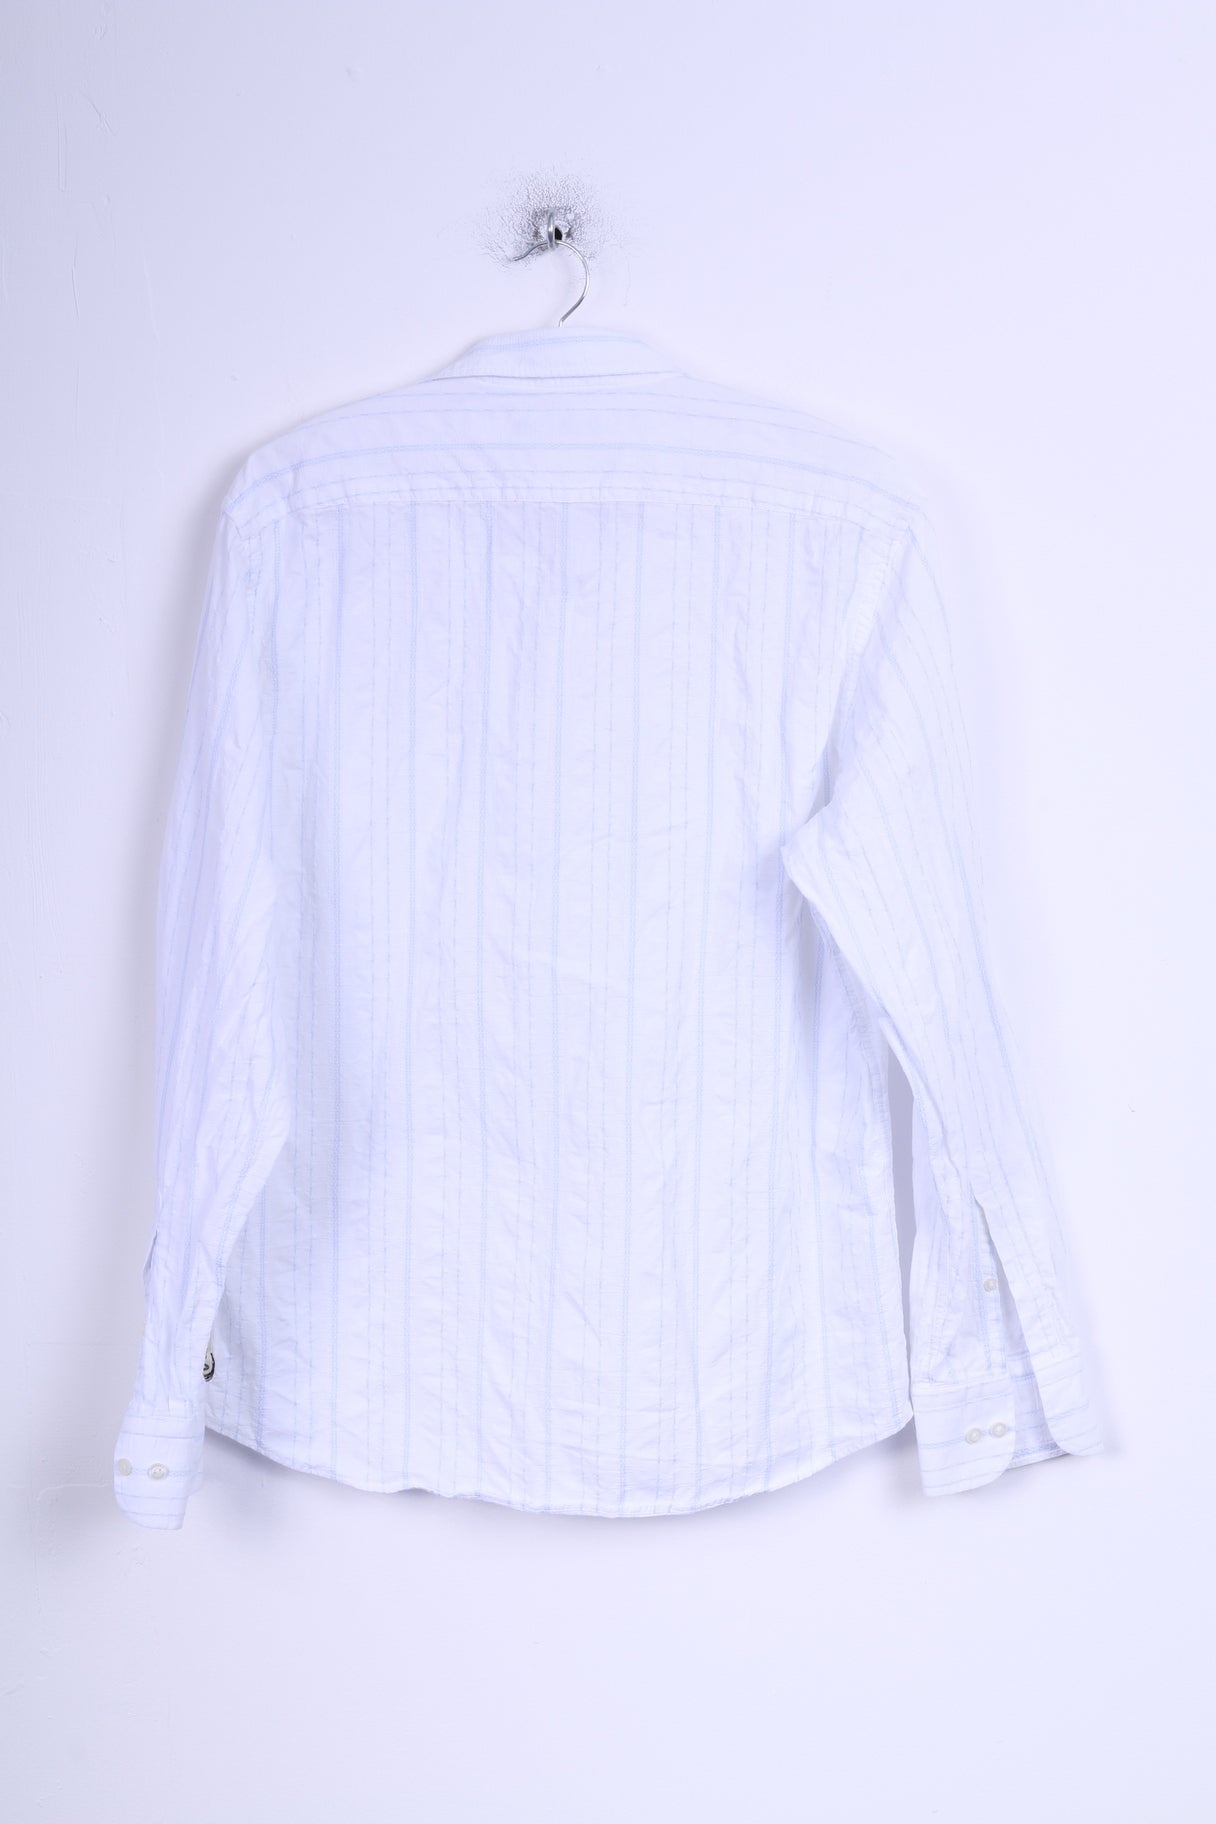 Duck And Cover Chemise décontractée pour homme XL (M) en coton rayé blanc et bleu à manches longues